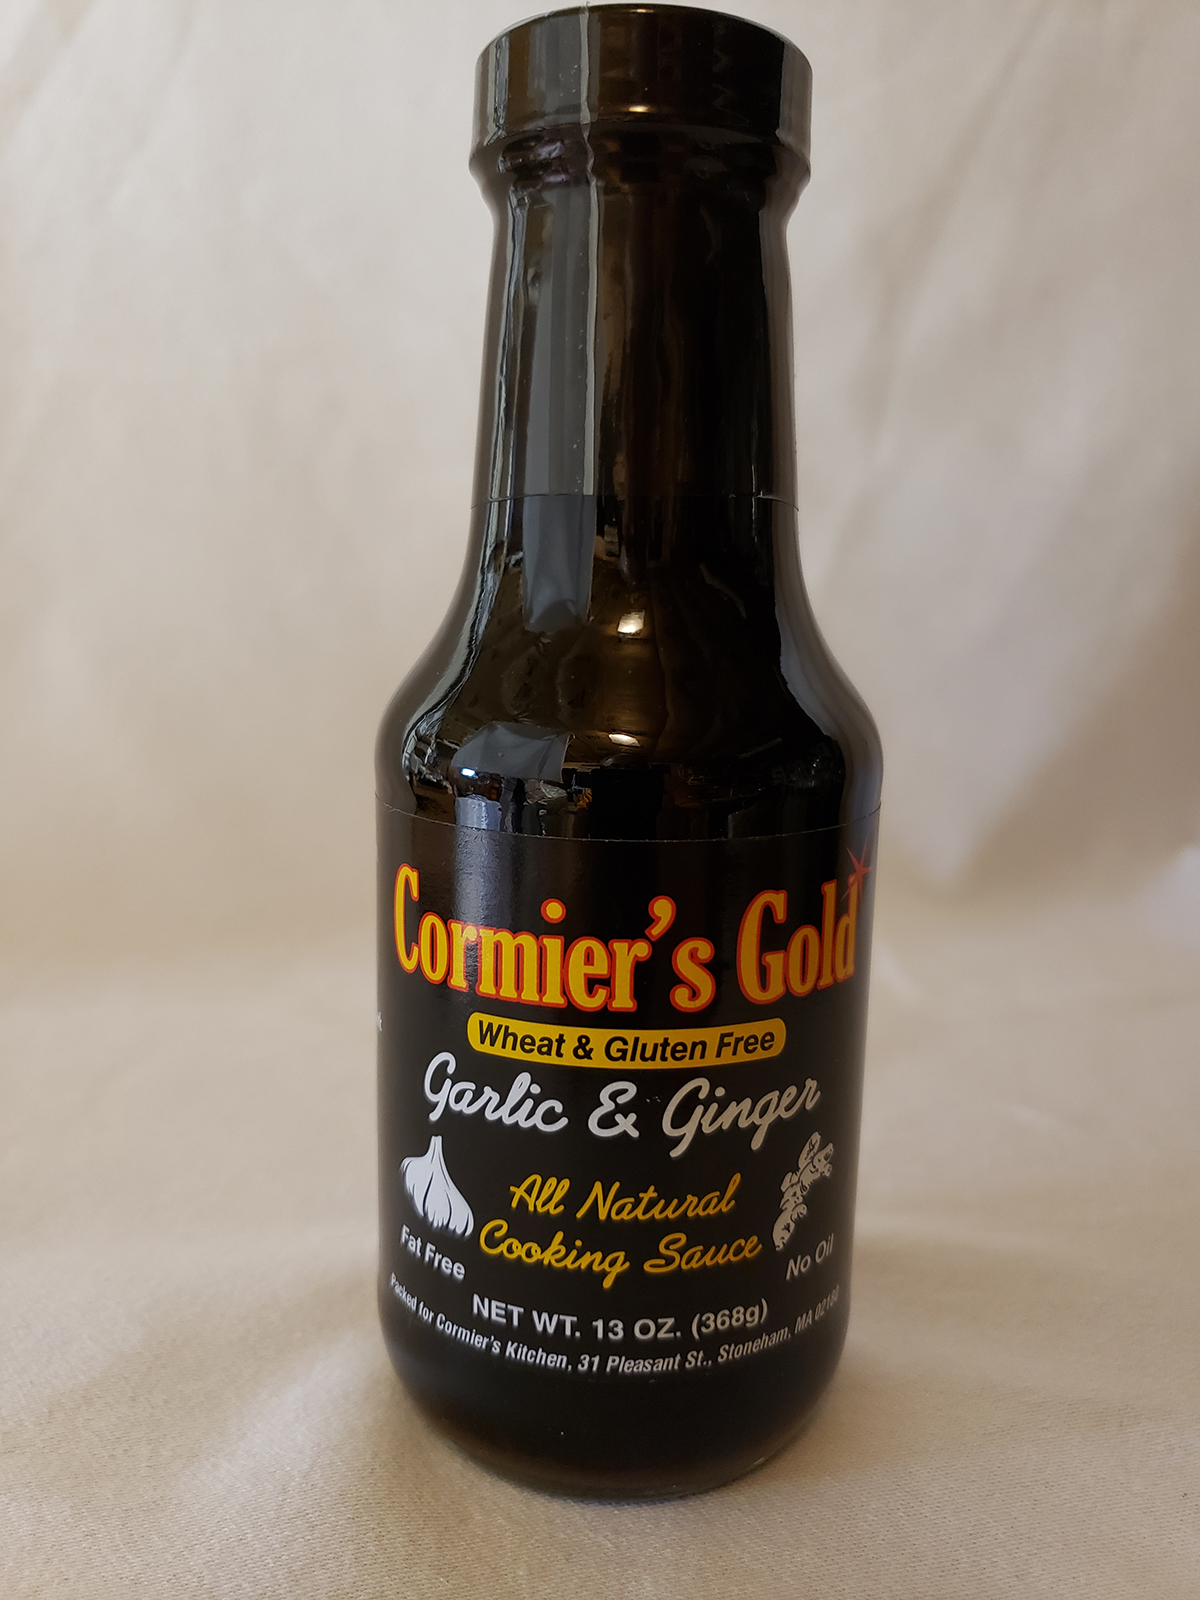 Cormier's Gold Sauce